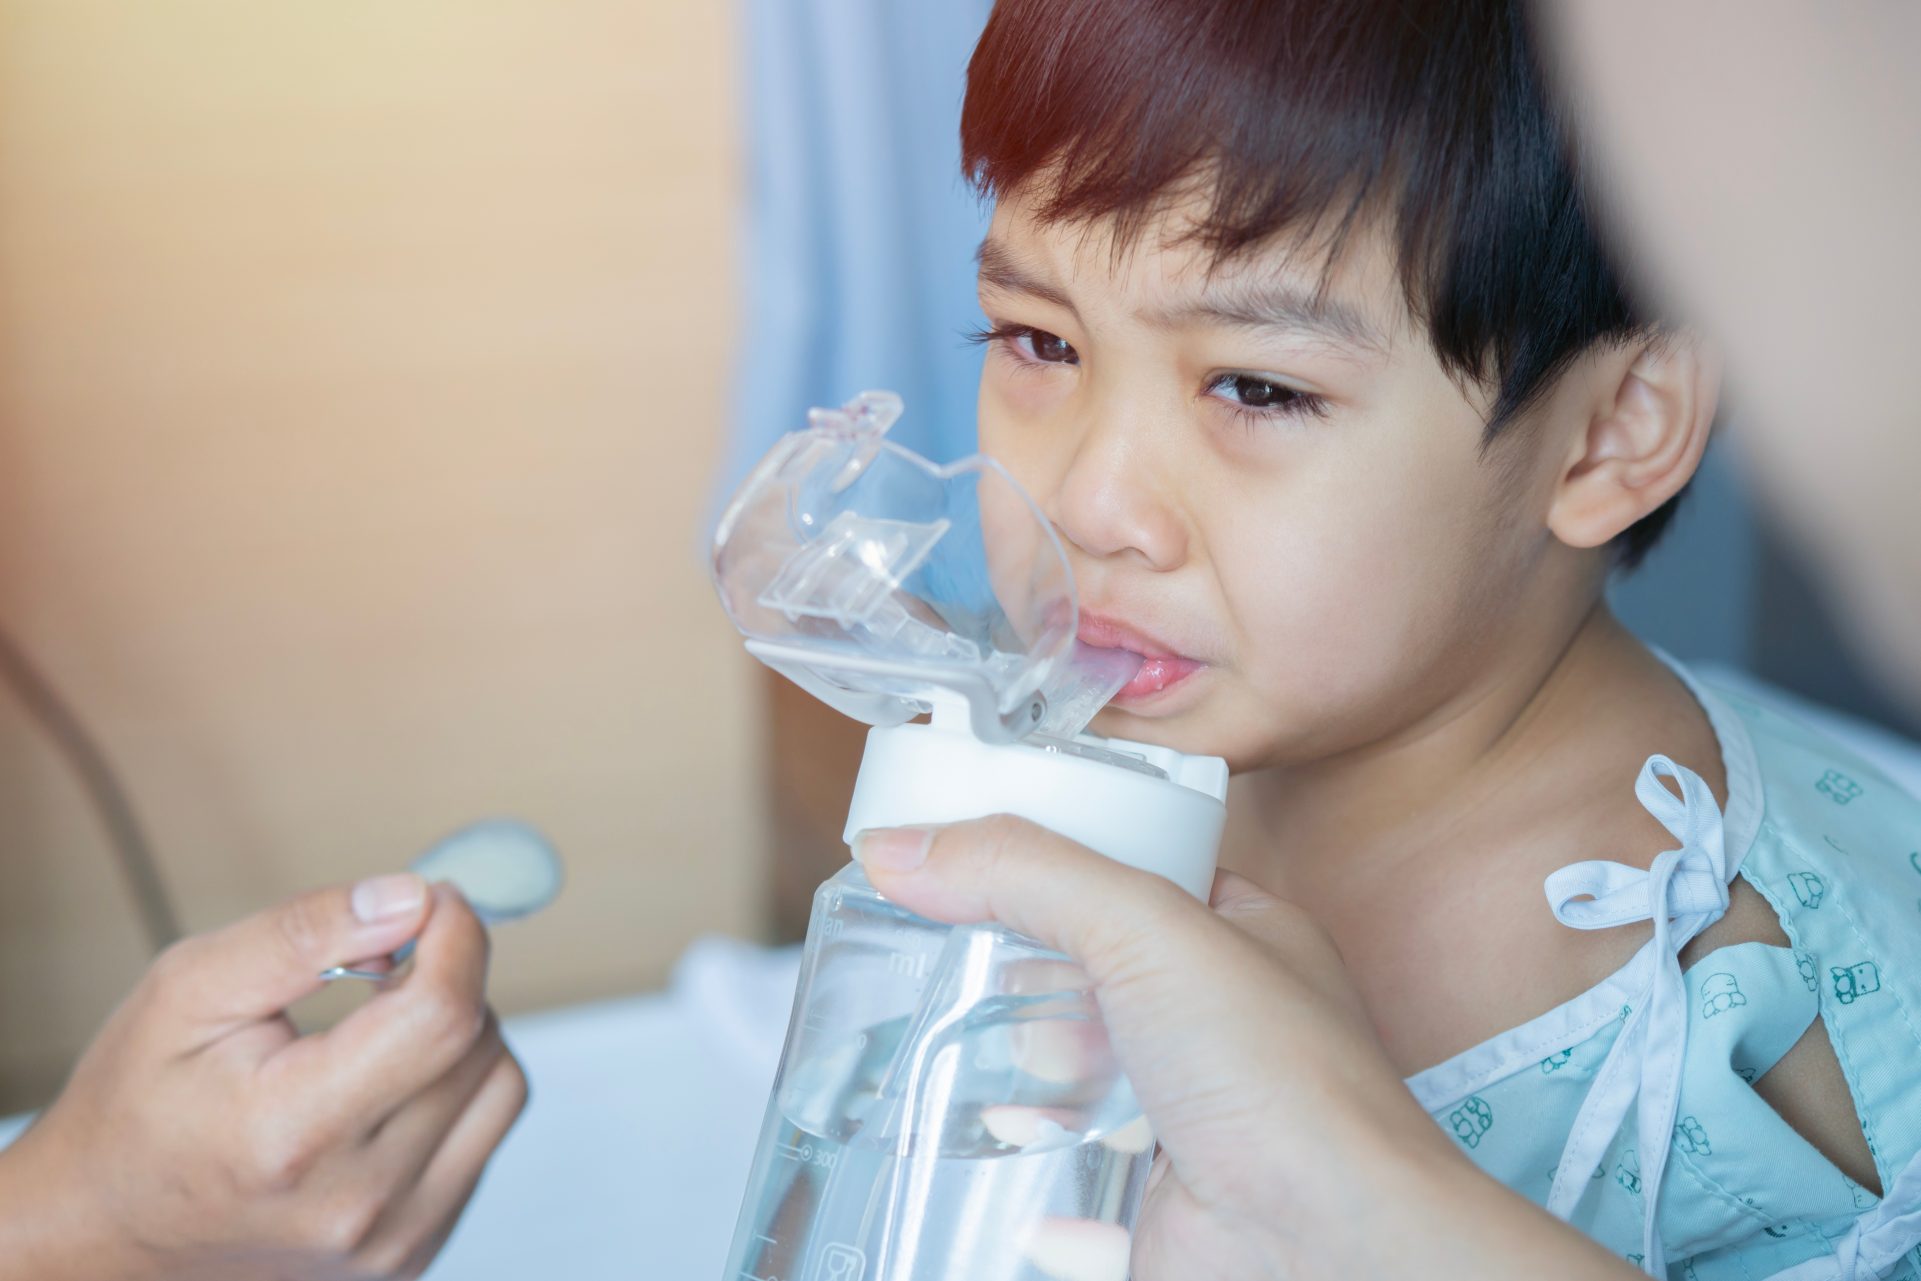 若小朋友感染腺病毒出現痾嘔腸胃炎徵狀，最重要是水份的補充。